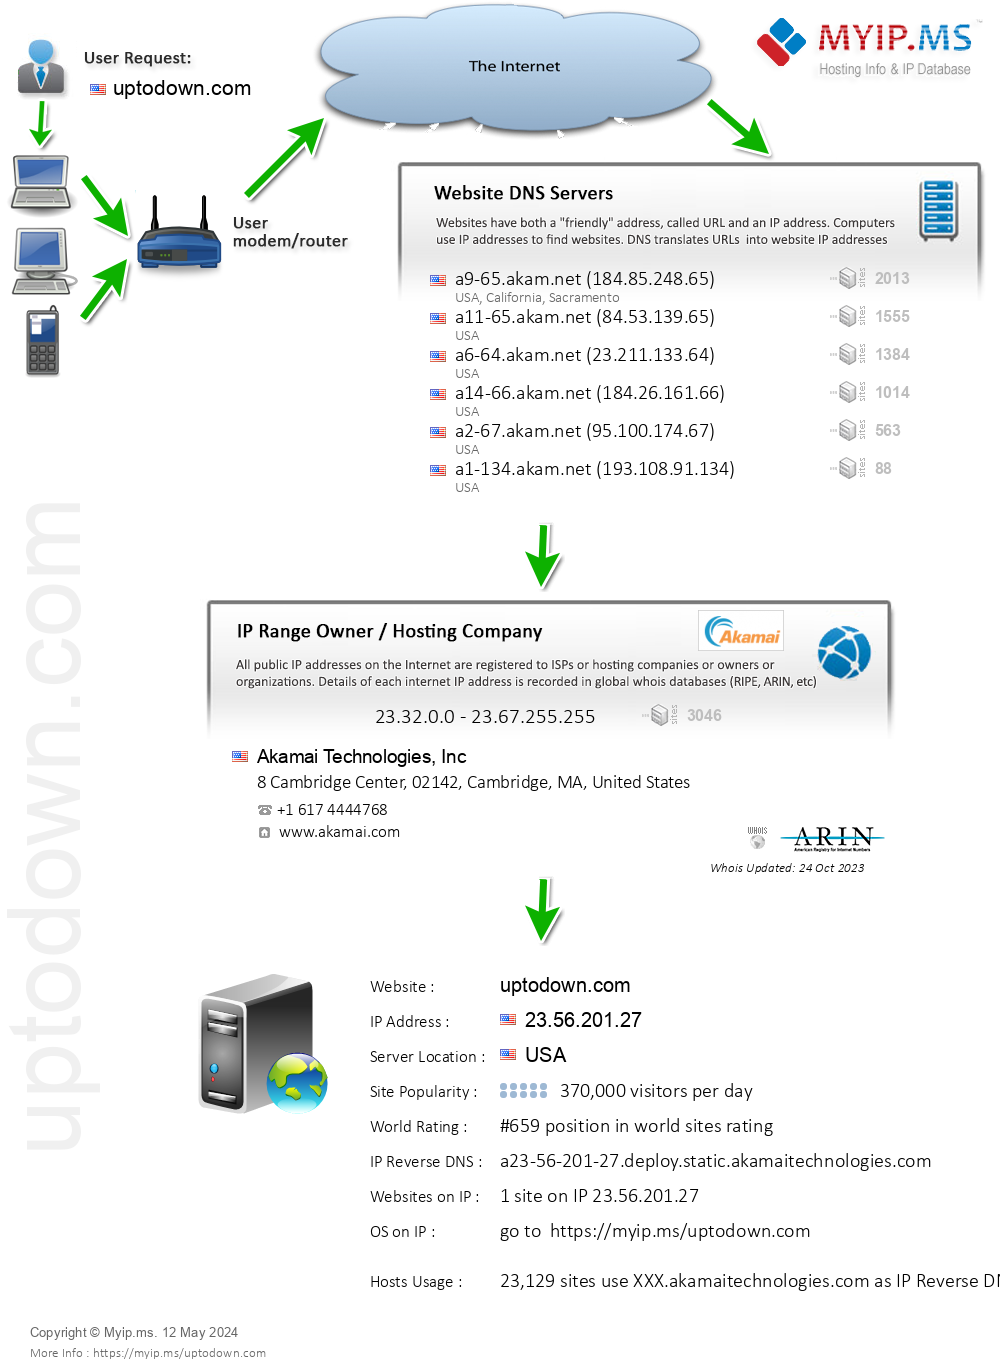 Uptodown.com - Website Hosting Visual IP Diagram